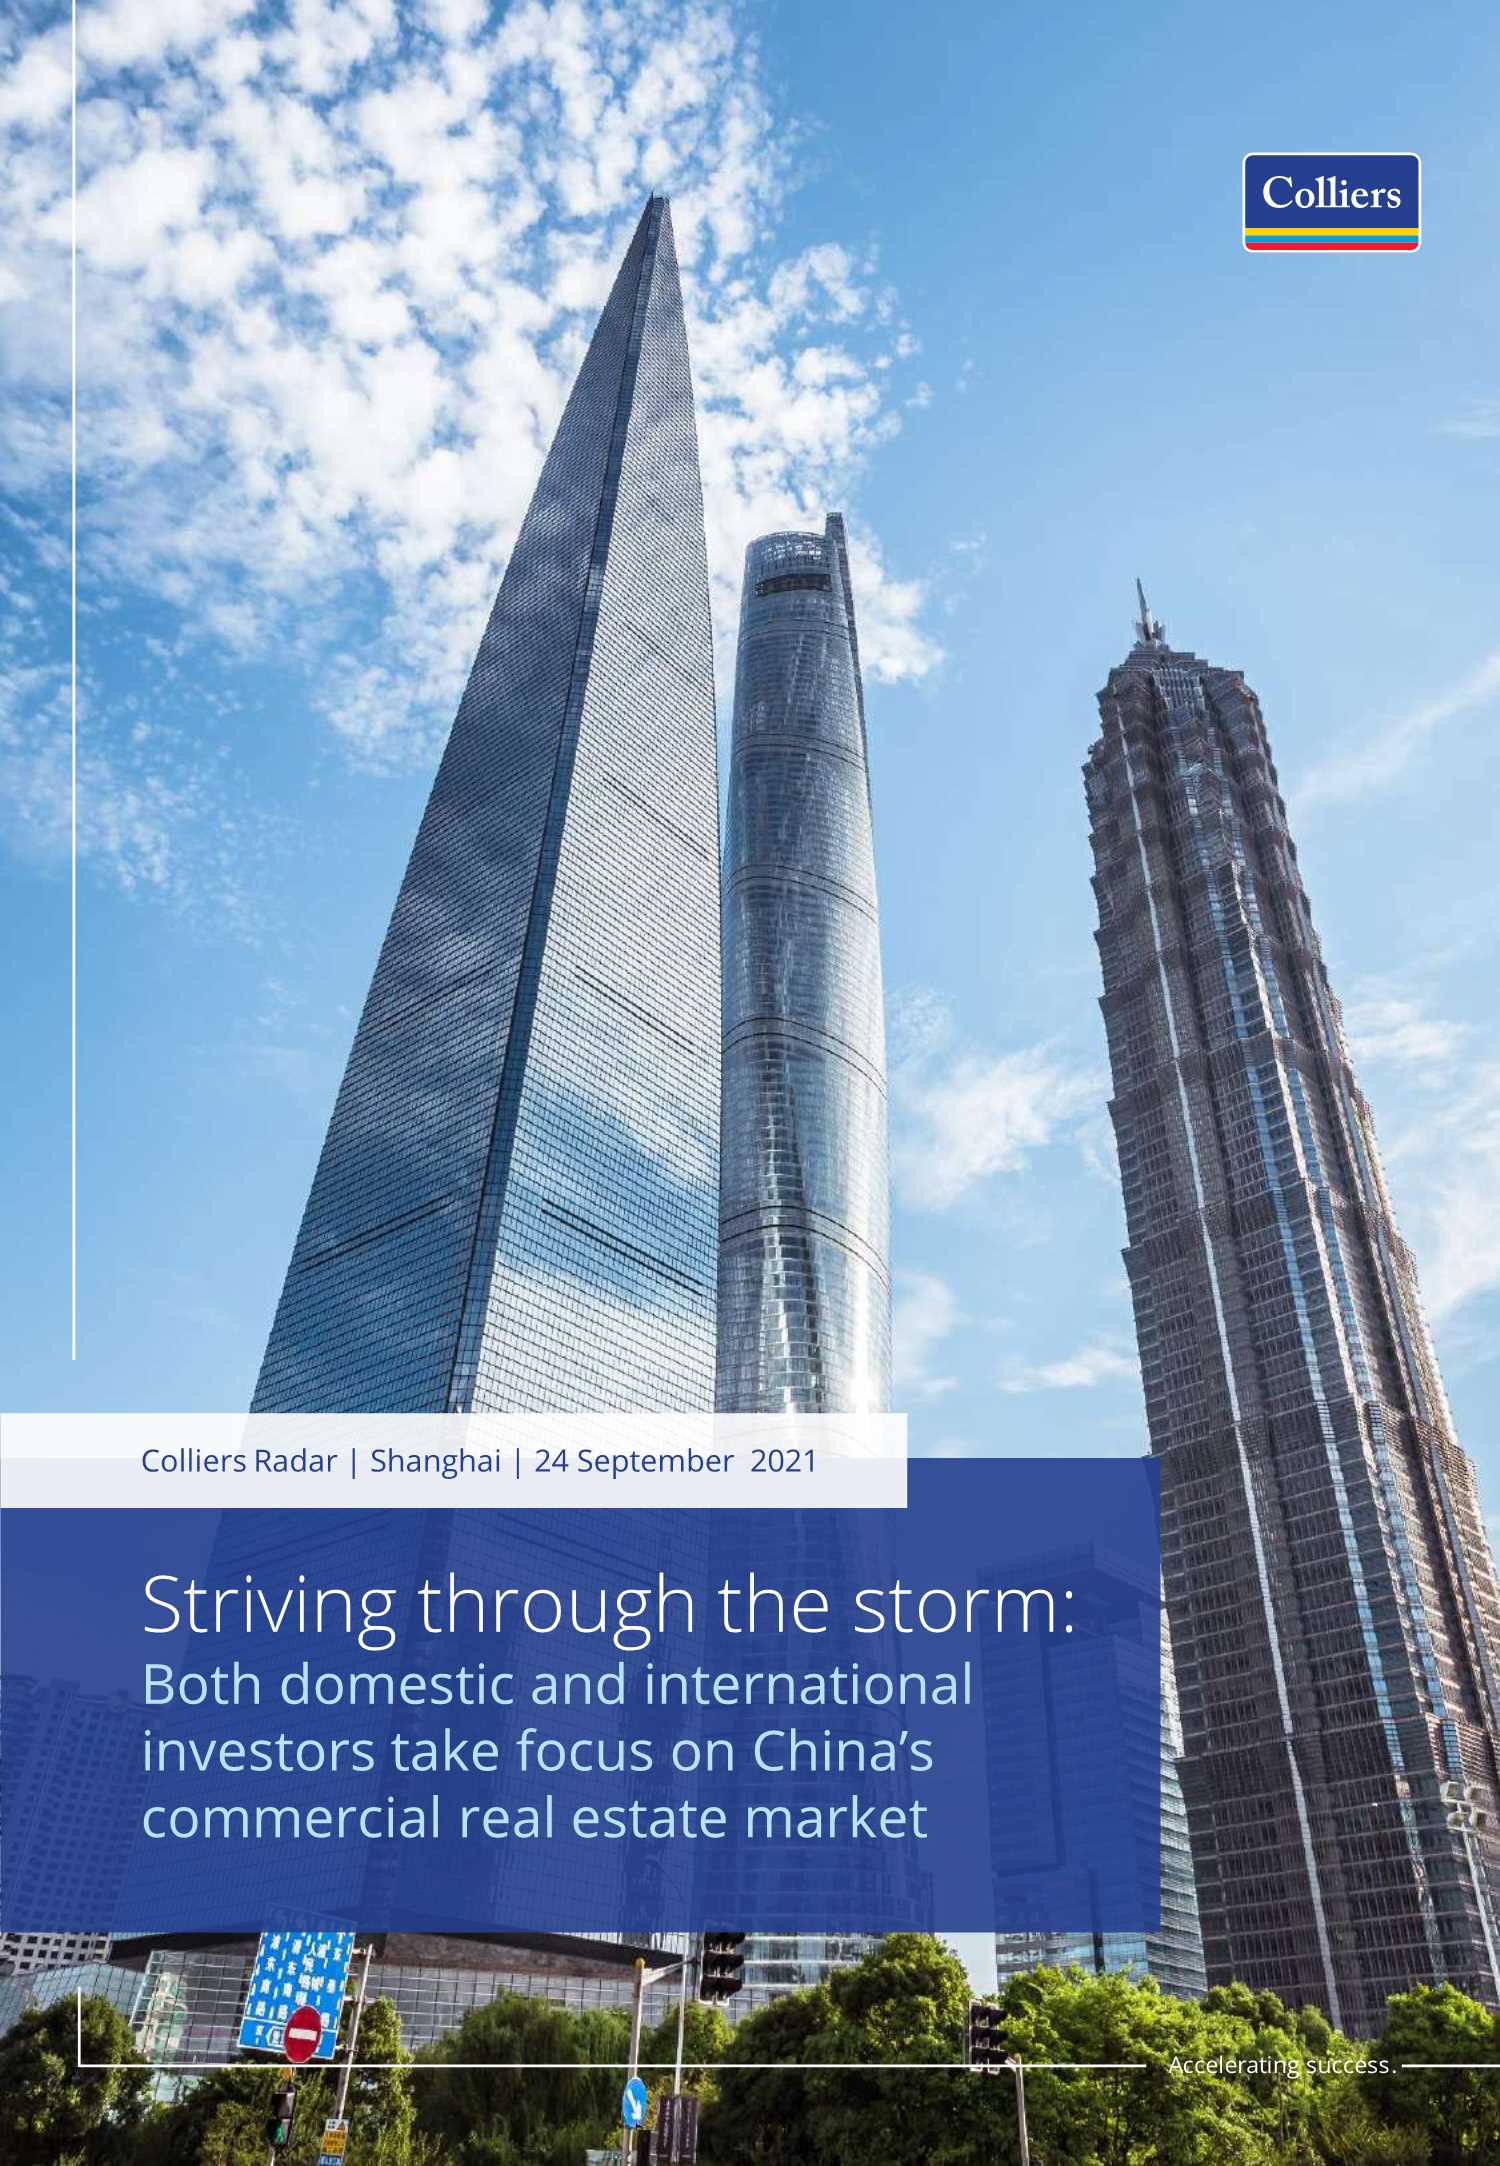 高力国际-乘风破浪，踏浪前行境内外投资者加大对于中国房地产的投资（英文）-2021.10-13页